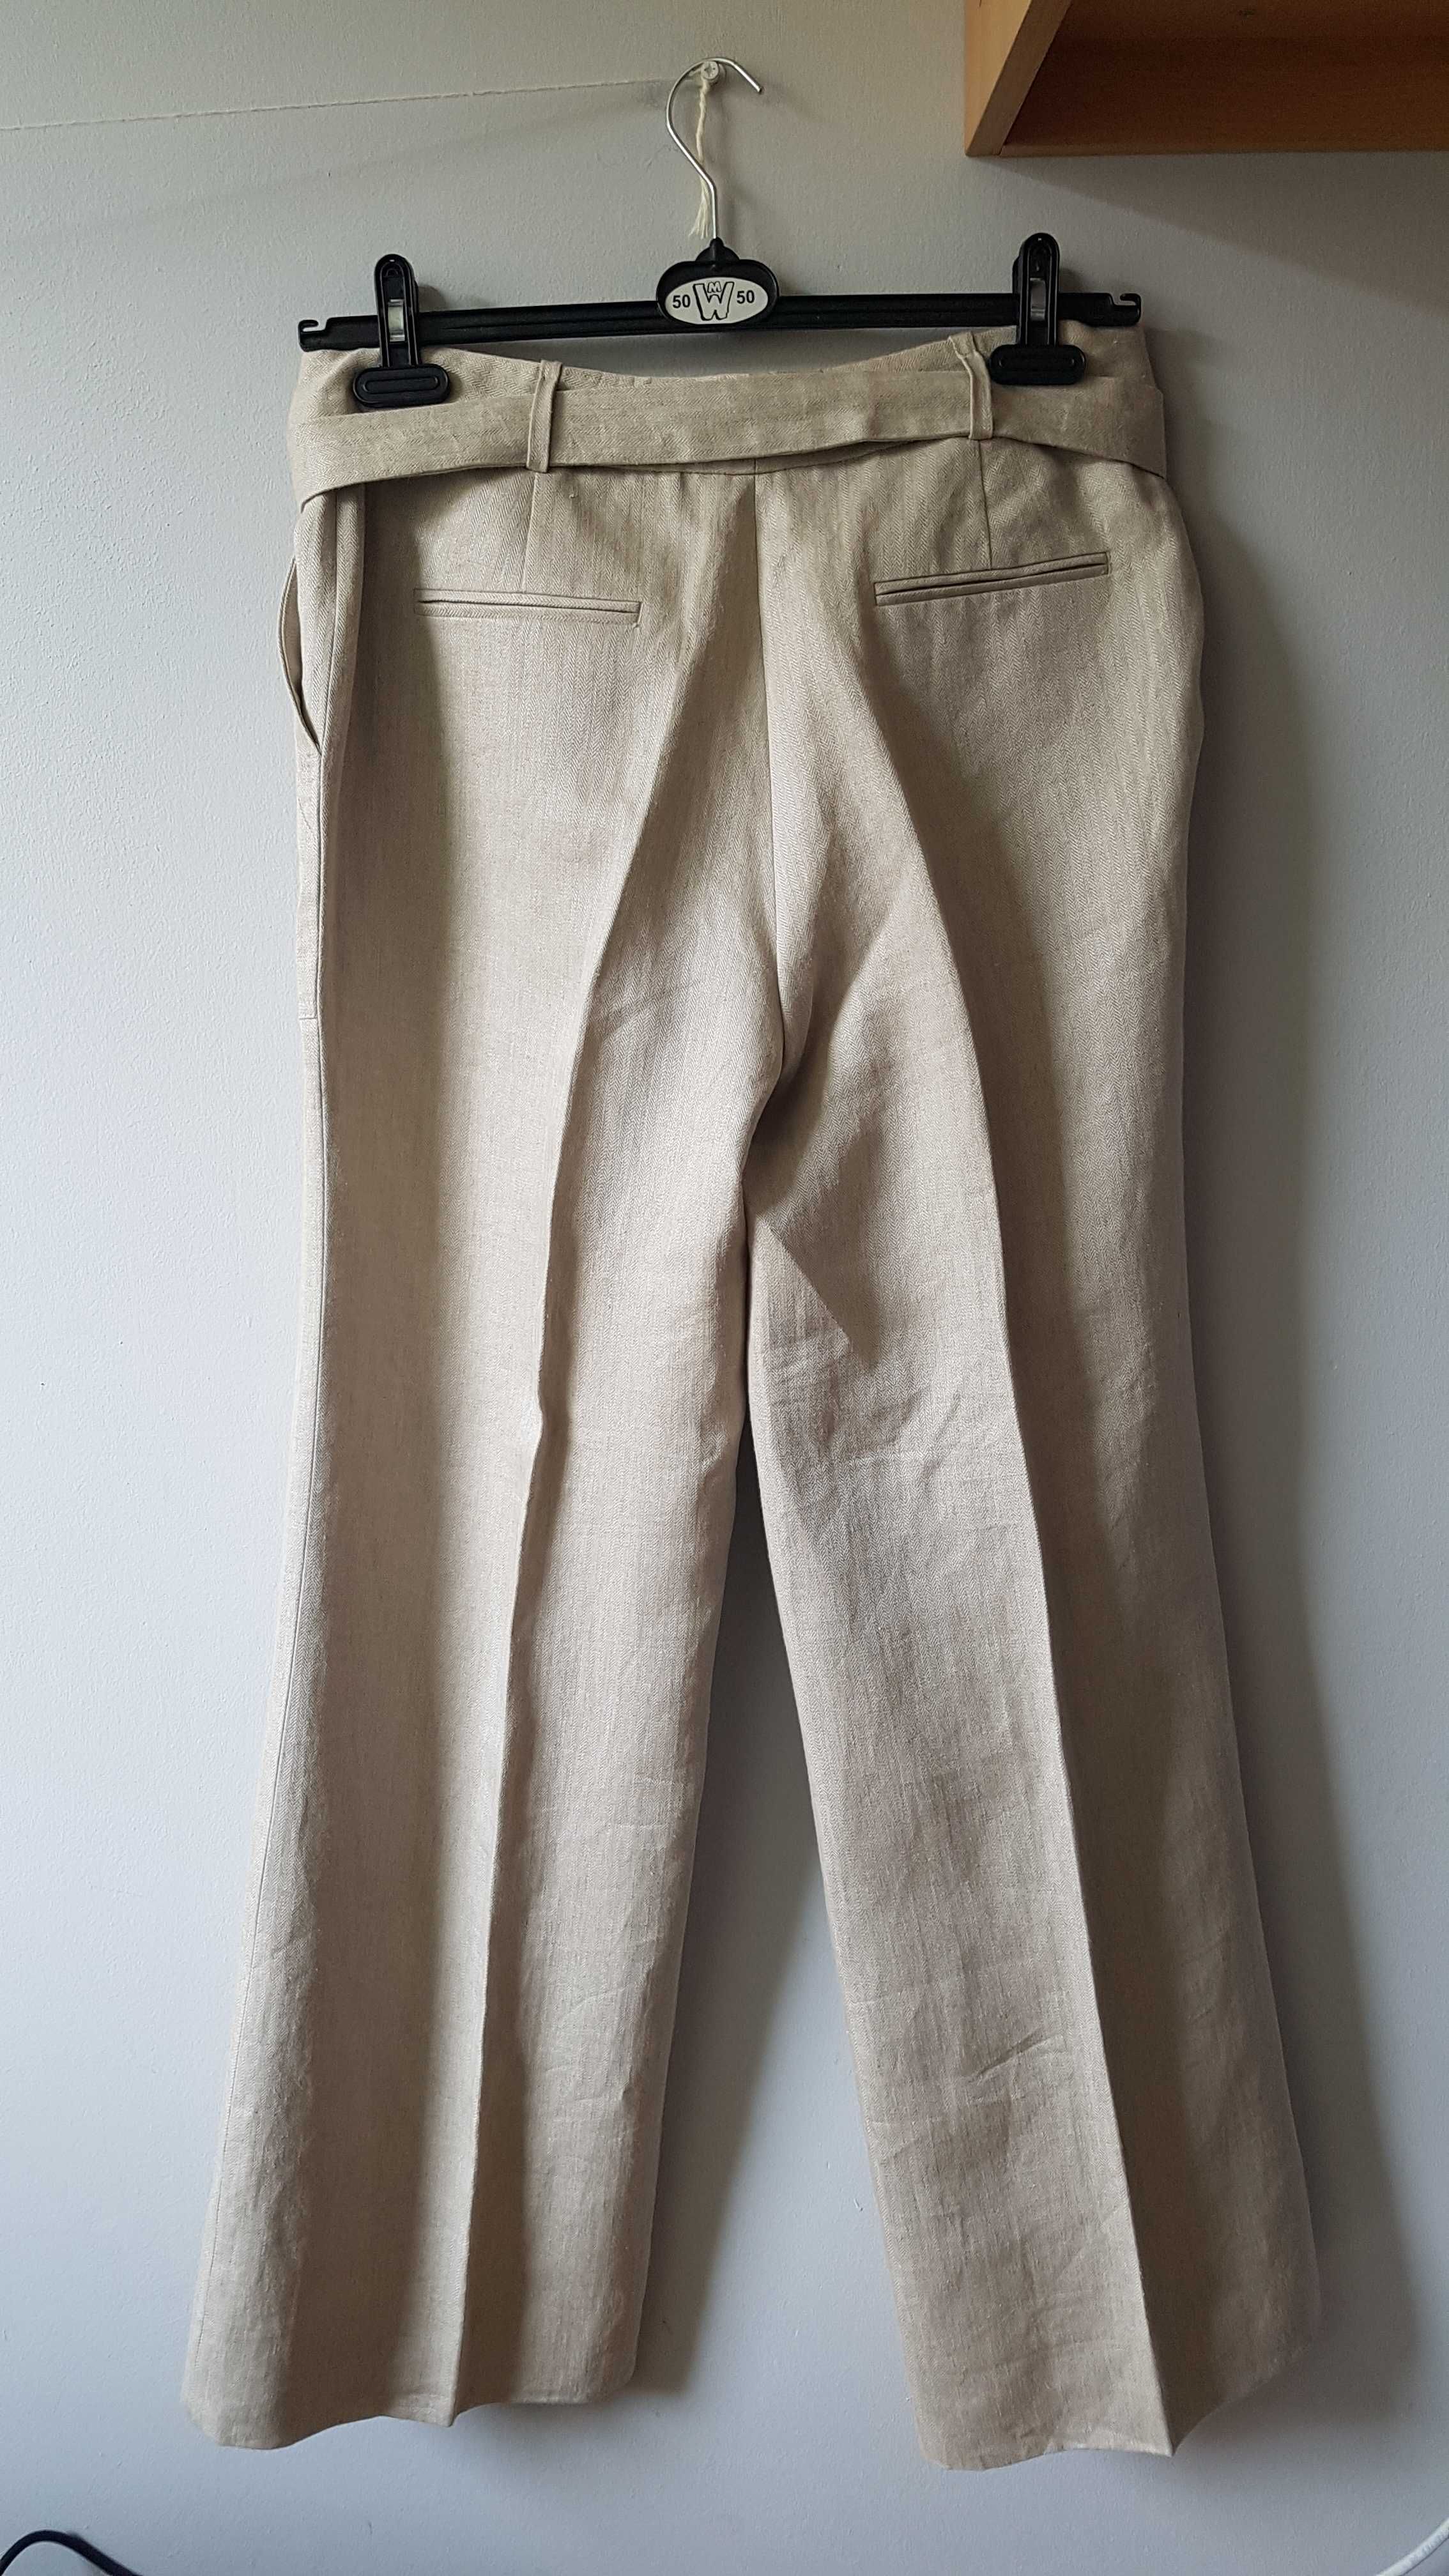 Massimo Dutti spodnie 100% Len rozmiar XL